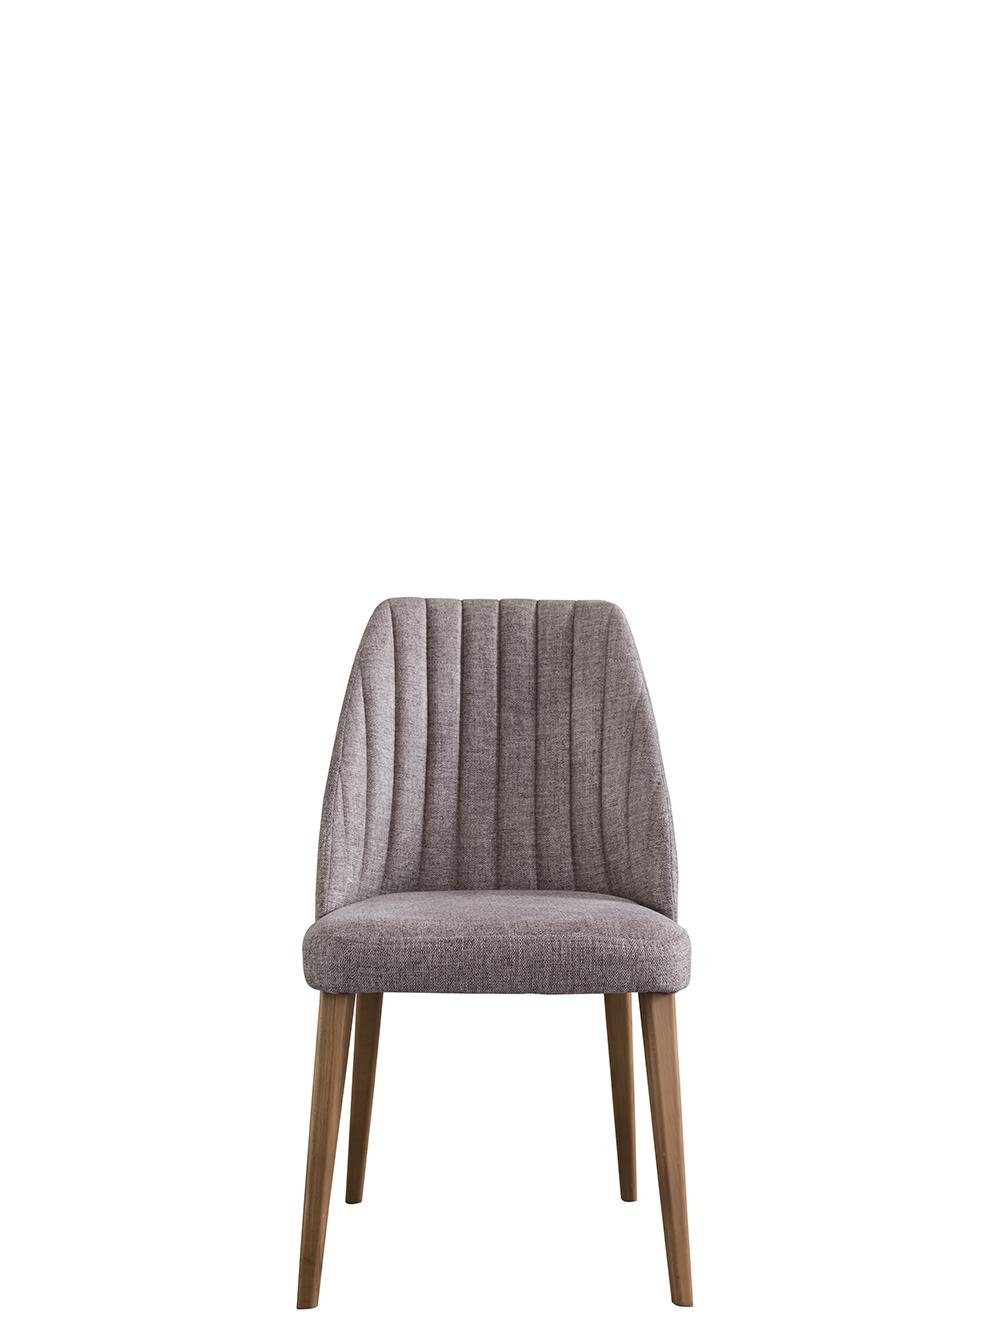 Design Europa Moderne Stuhl in JVmoebel (1 Einrichtung Möbel Esszimmerstuhl Neu Grau Made St), Esszimmer